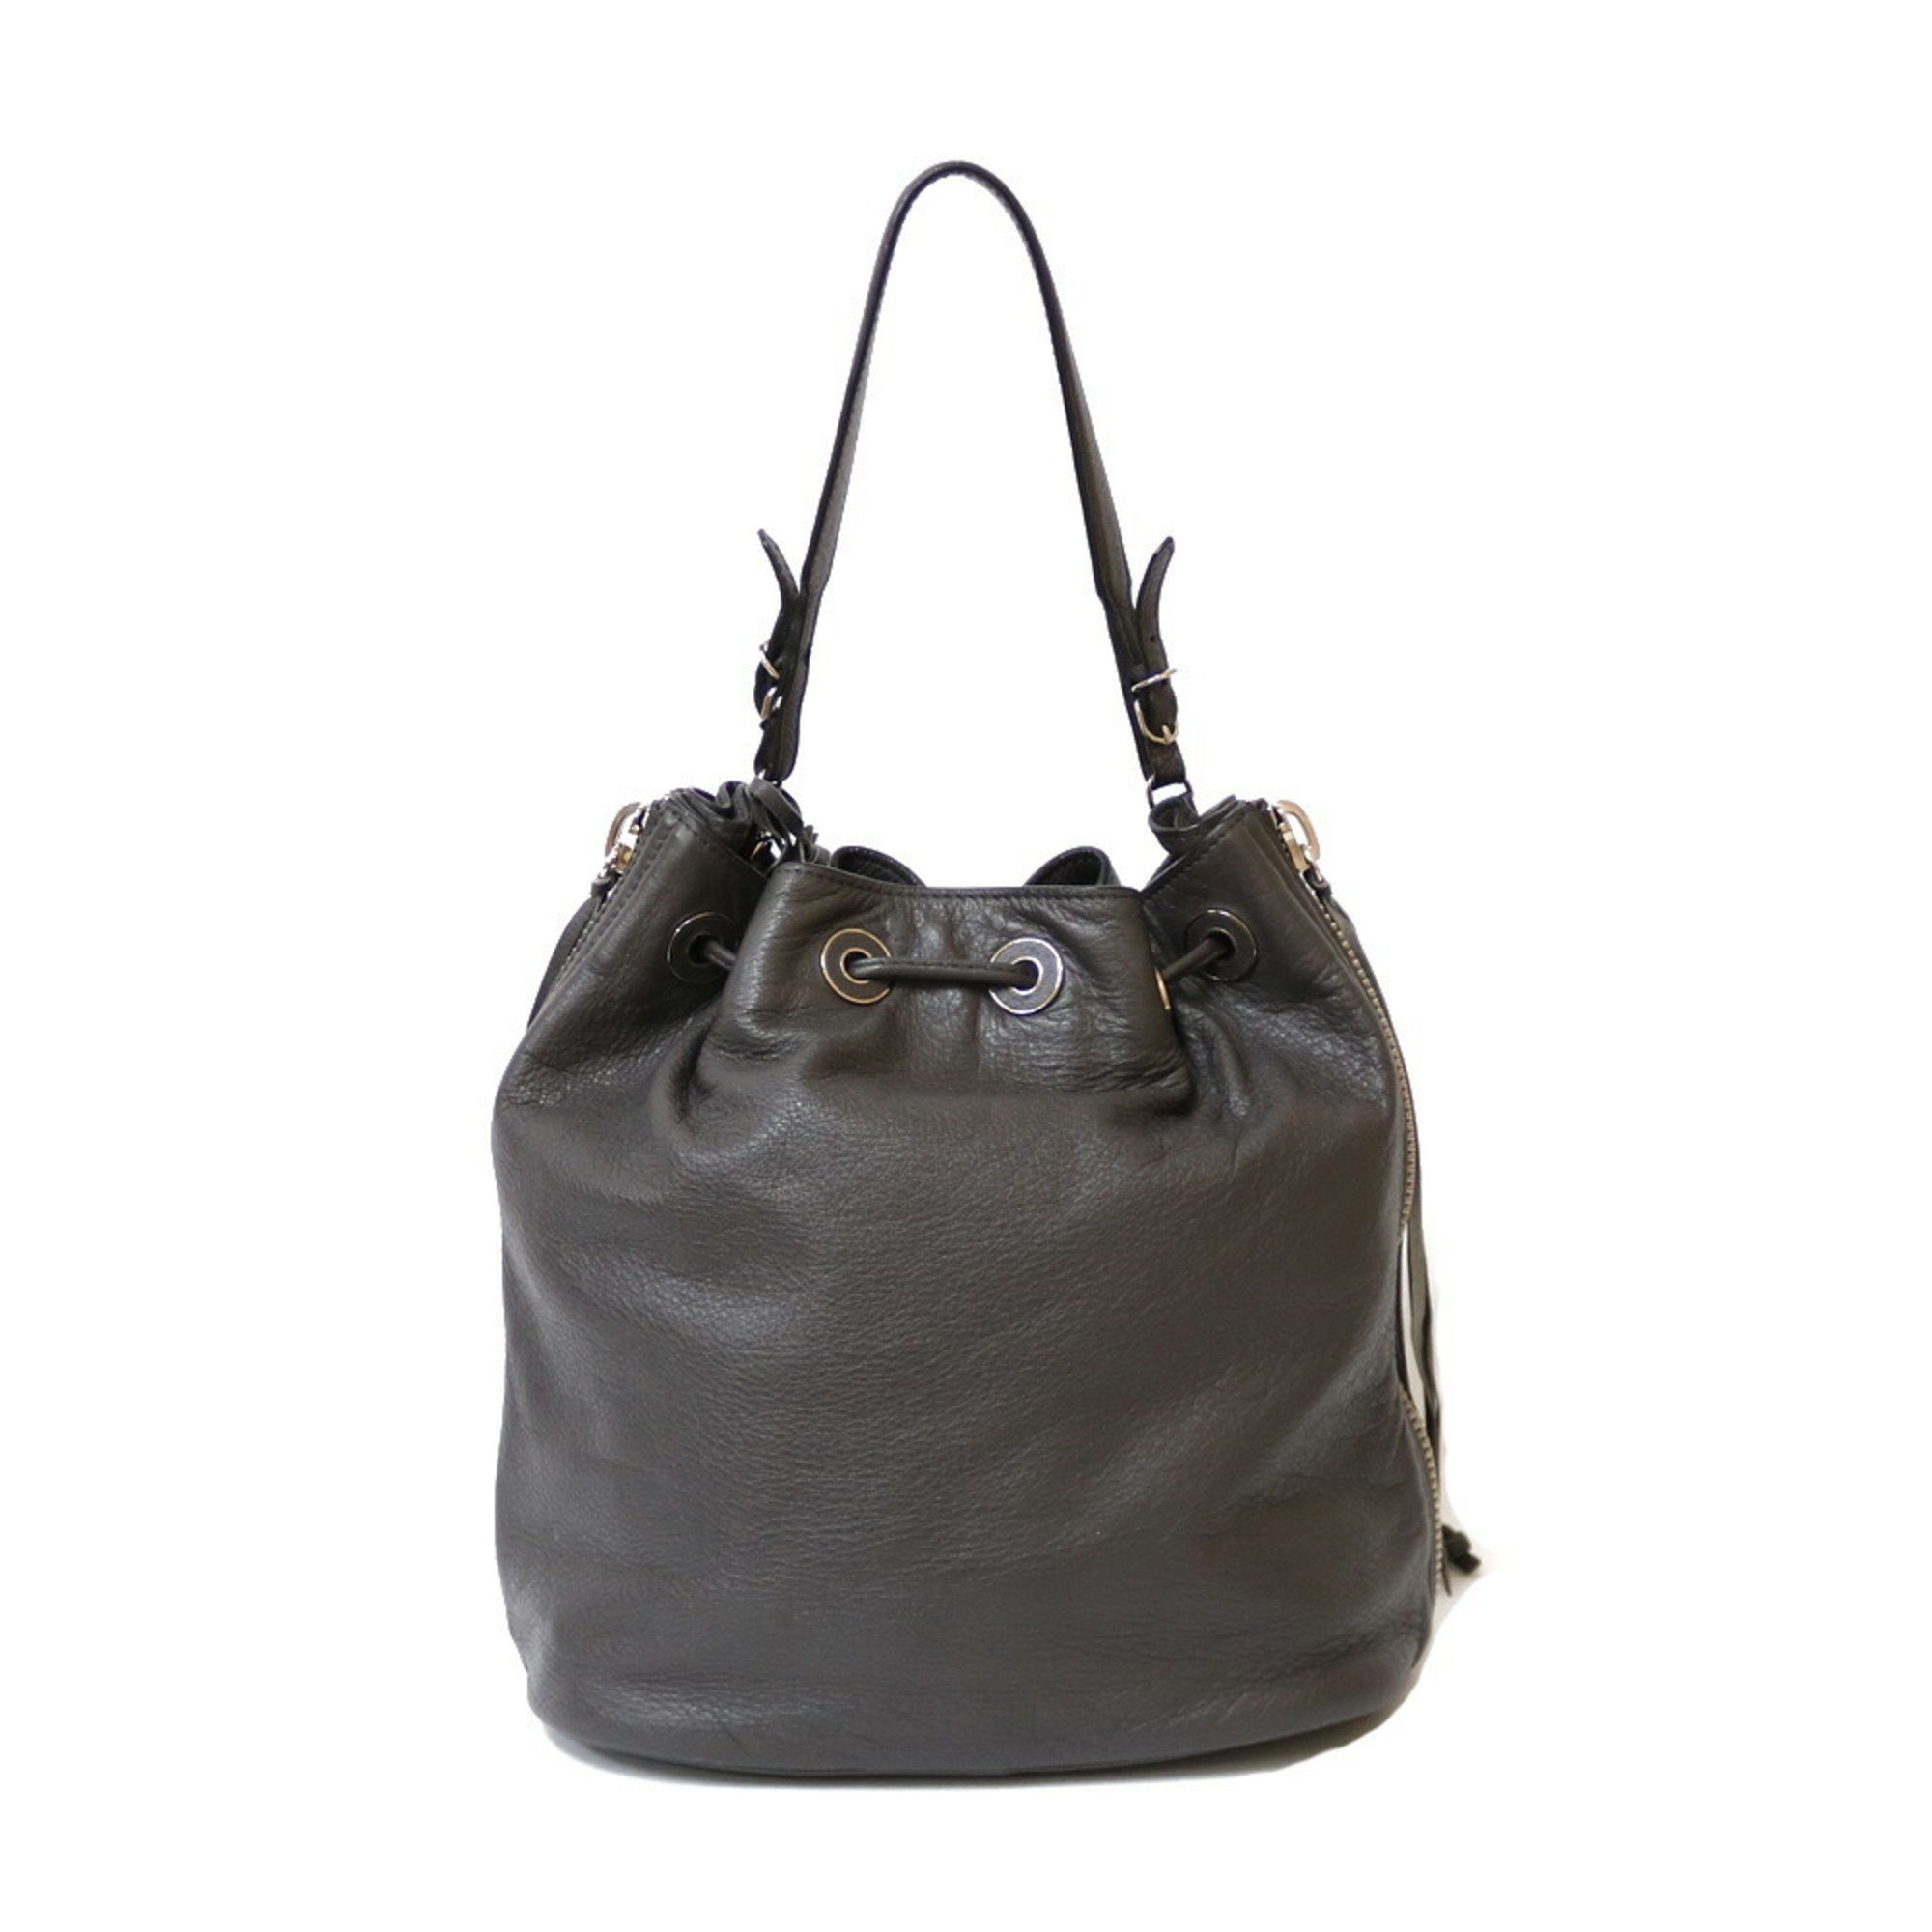 BALENCIAGA Shoulder Bag Handbag Gray Women's Leather